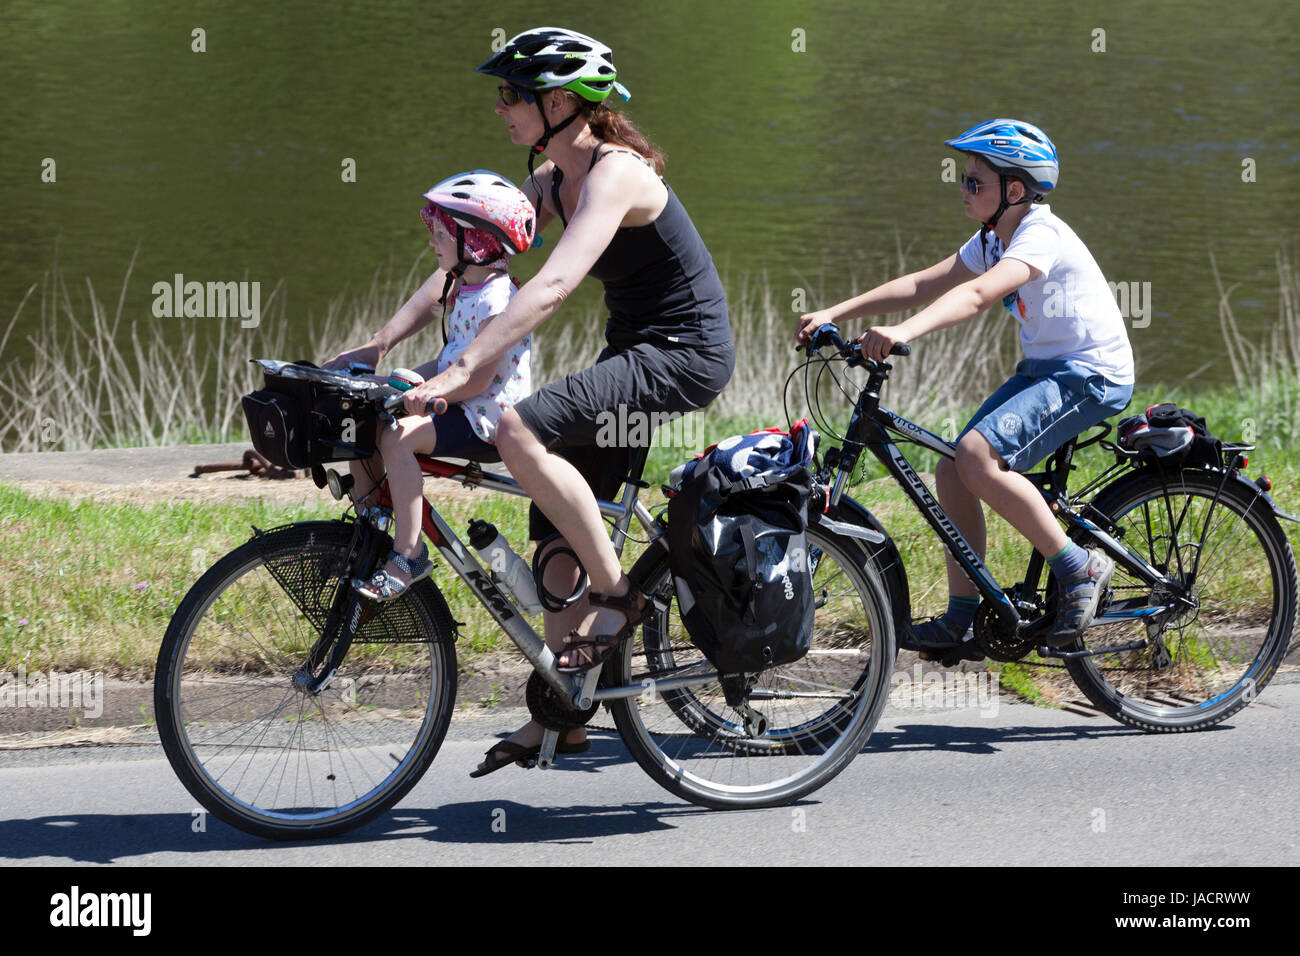 Allemagne famille cycliste mère avec deux enfants, le tout-petit assis dans un siège enfant et tout le monde a des casques Elbe River Bike route Bike Trail enfant Banque D'Images